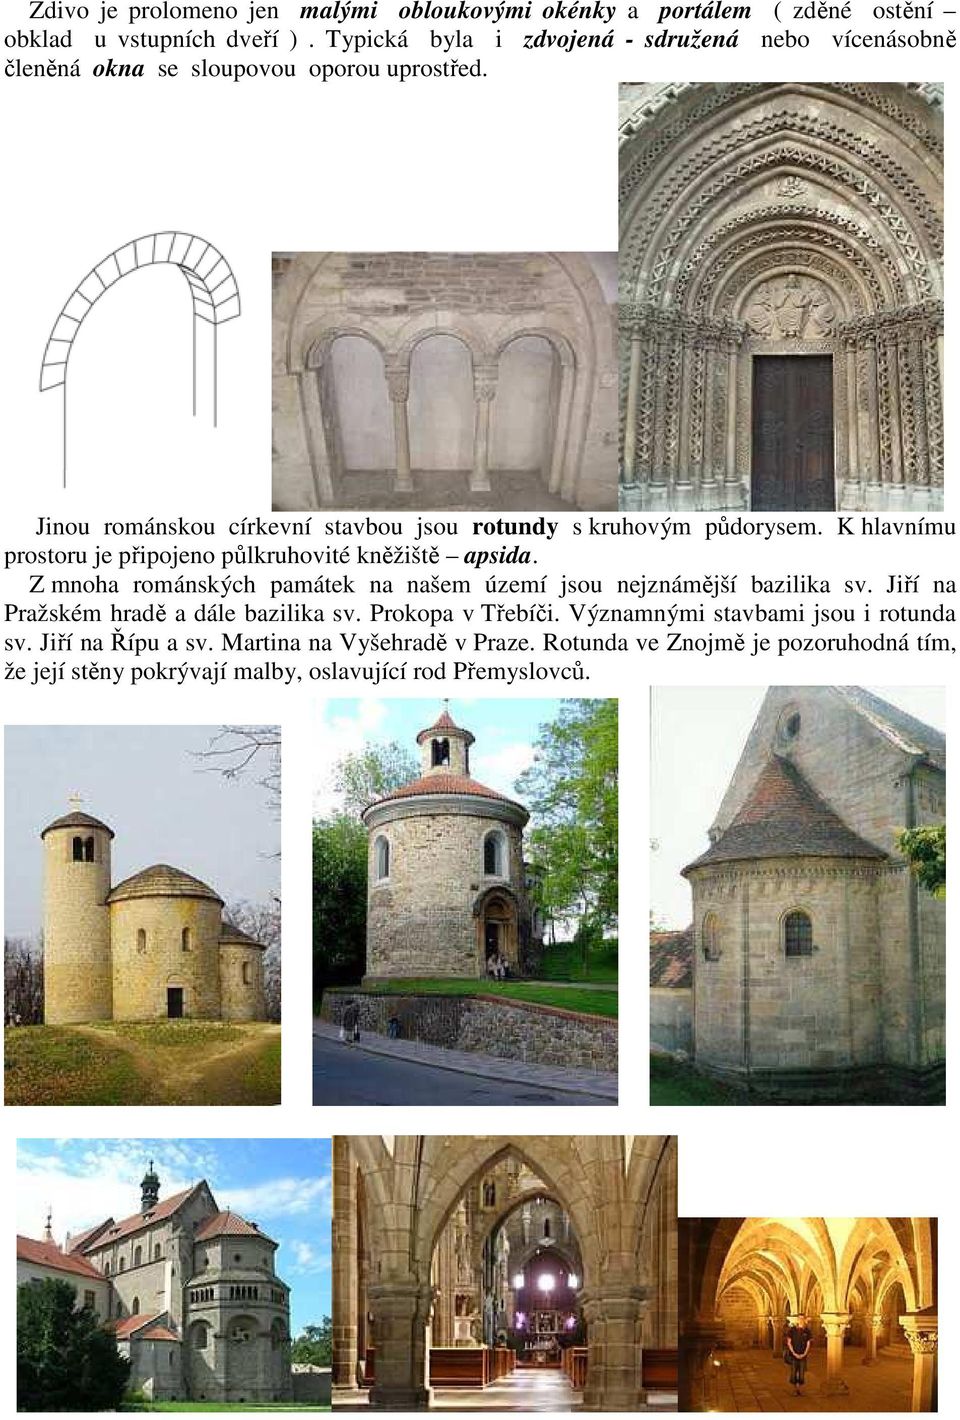 Jinou románskou církevní stavbou jsou rotundy s kruhovým půdorysem. K hlavnímu prostoru je připojeno půlkruhovité kněžiště apsida.